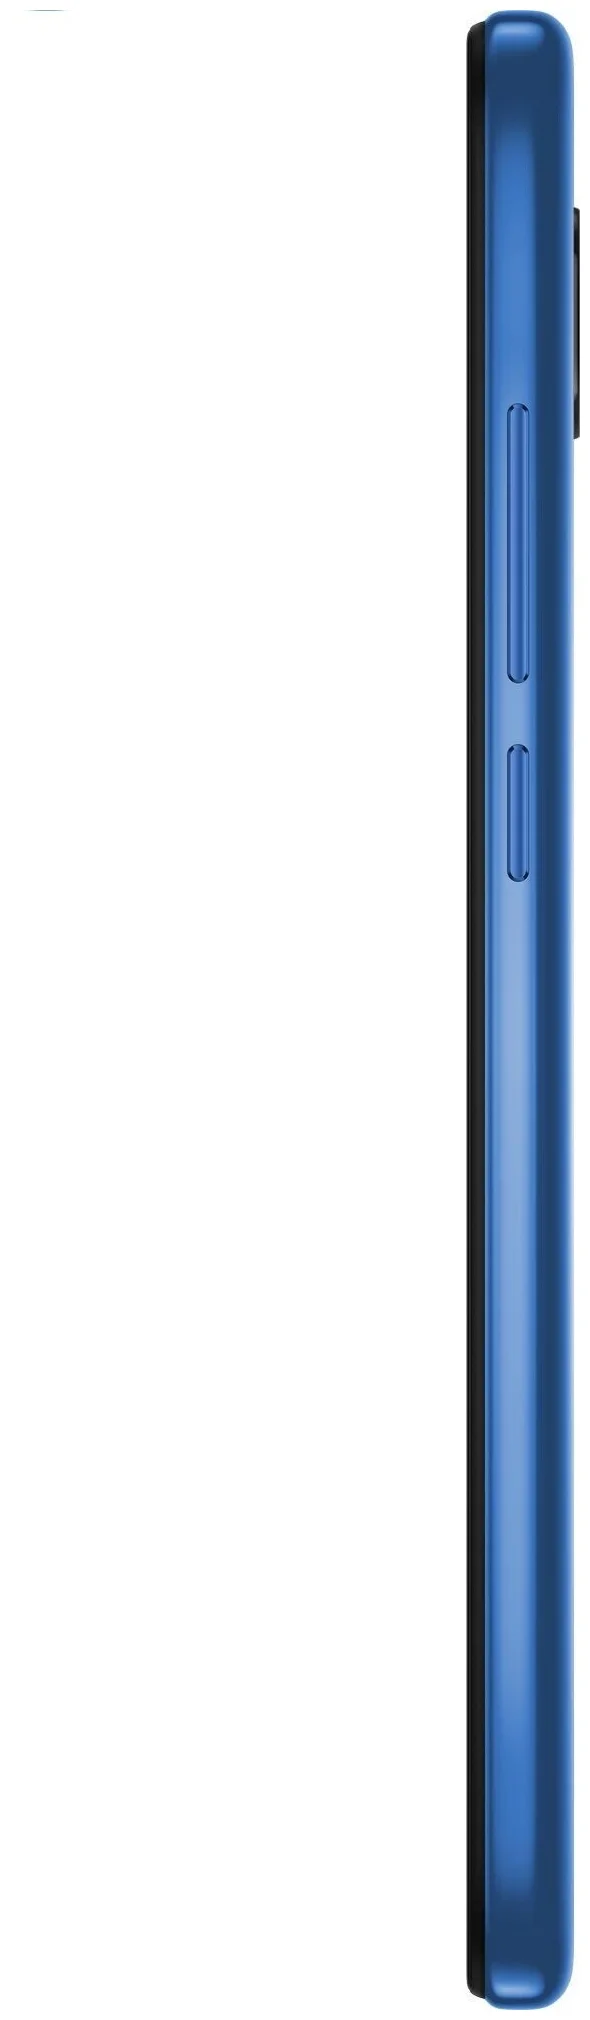 Xiaomi Redmi 8 4/64GB - SIM-карты: 2